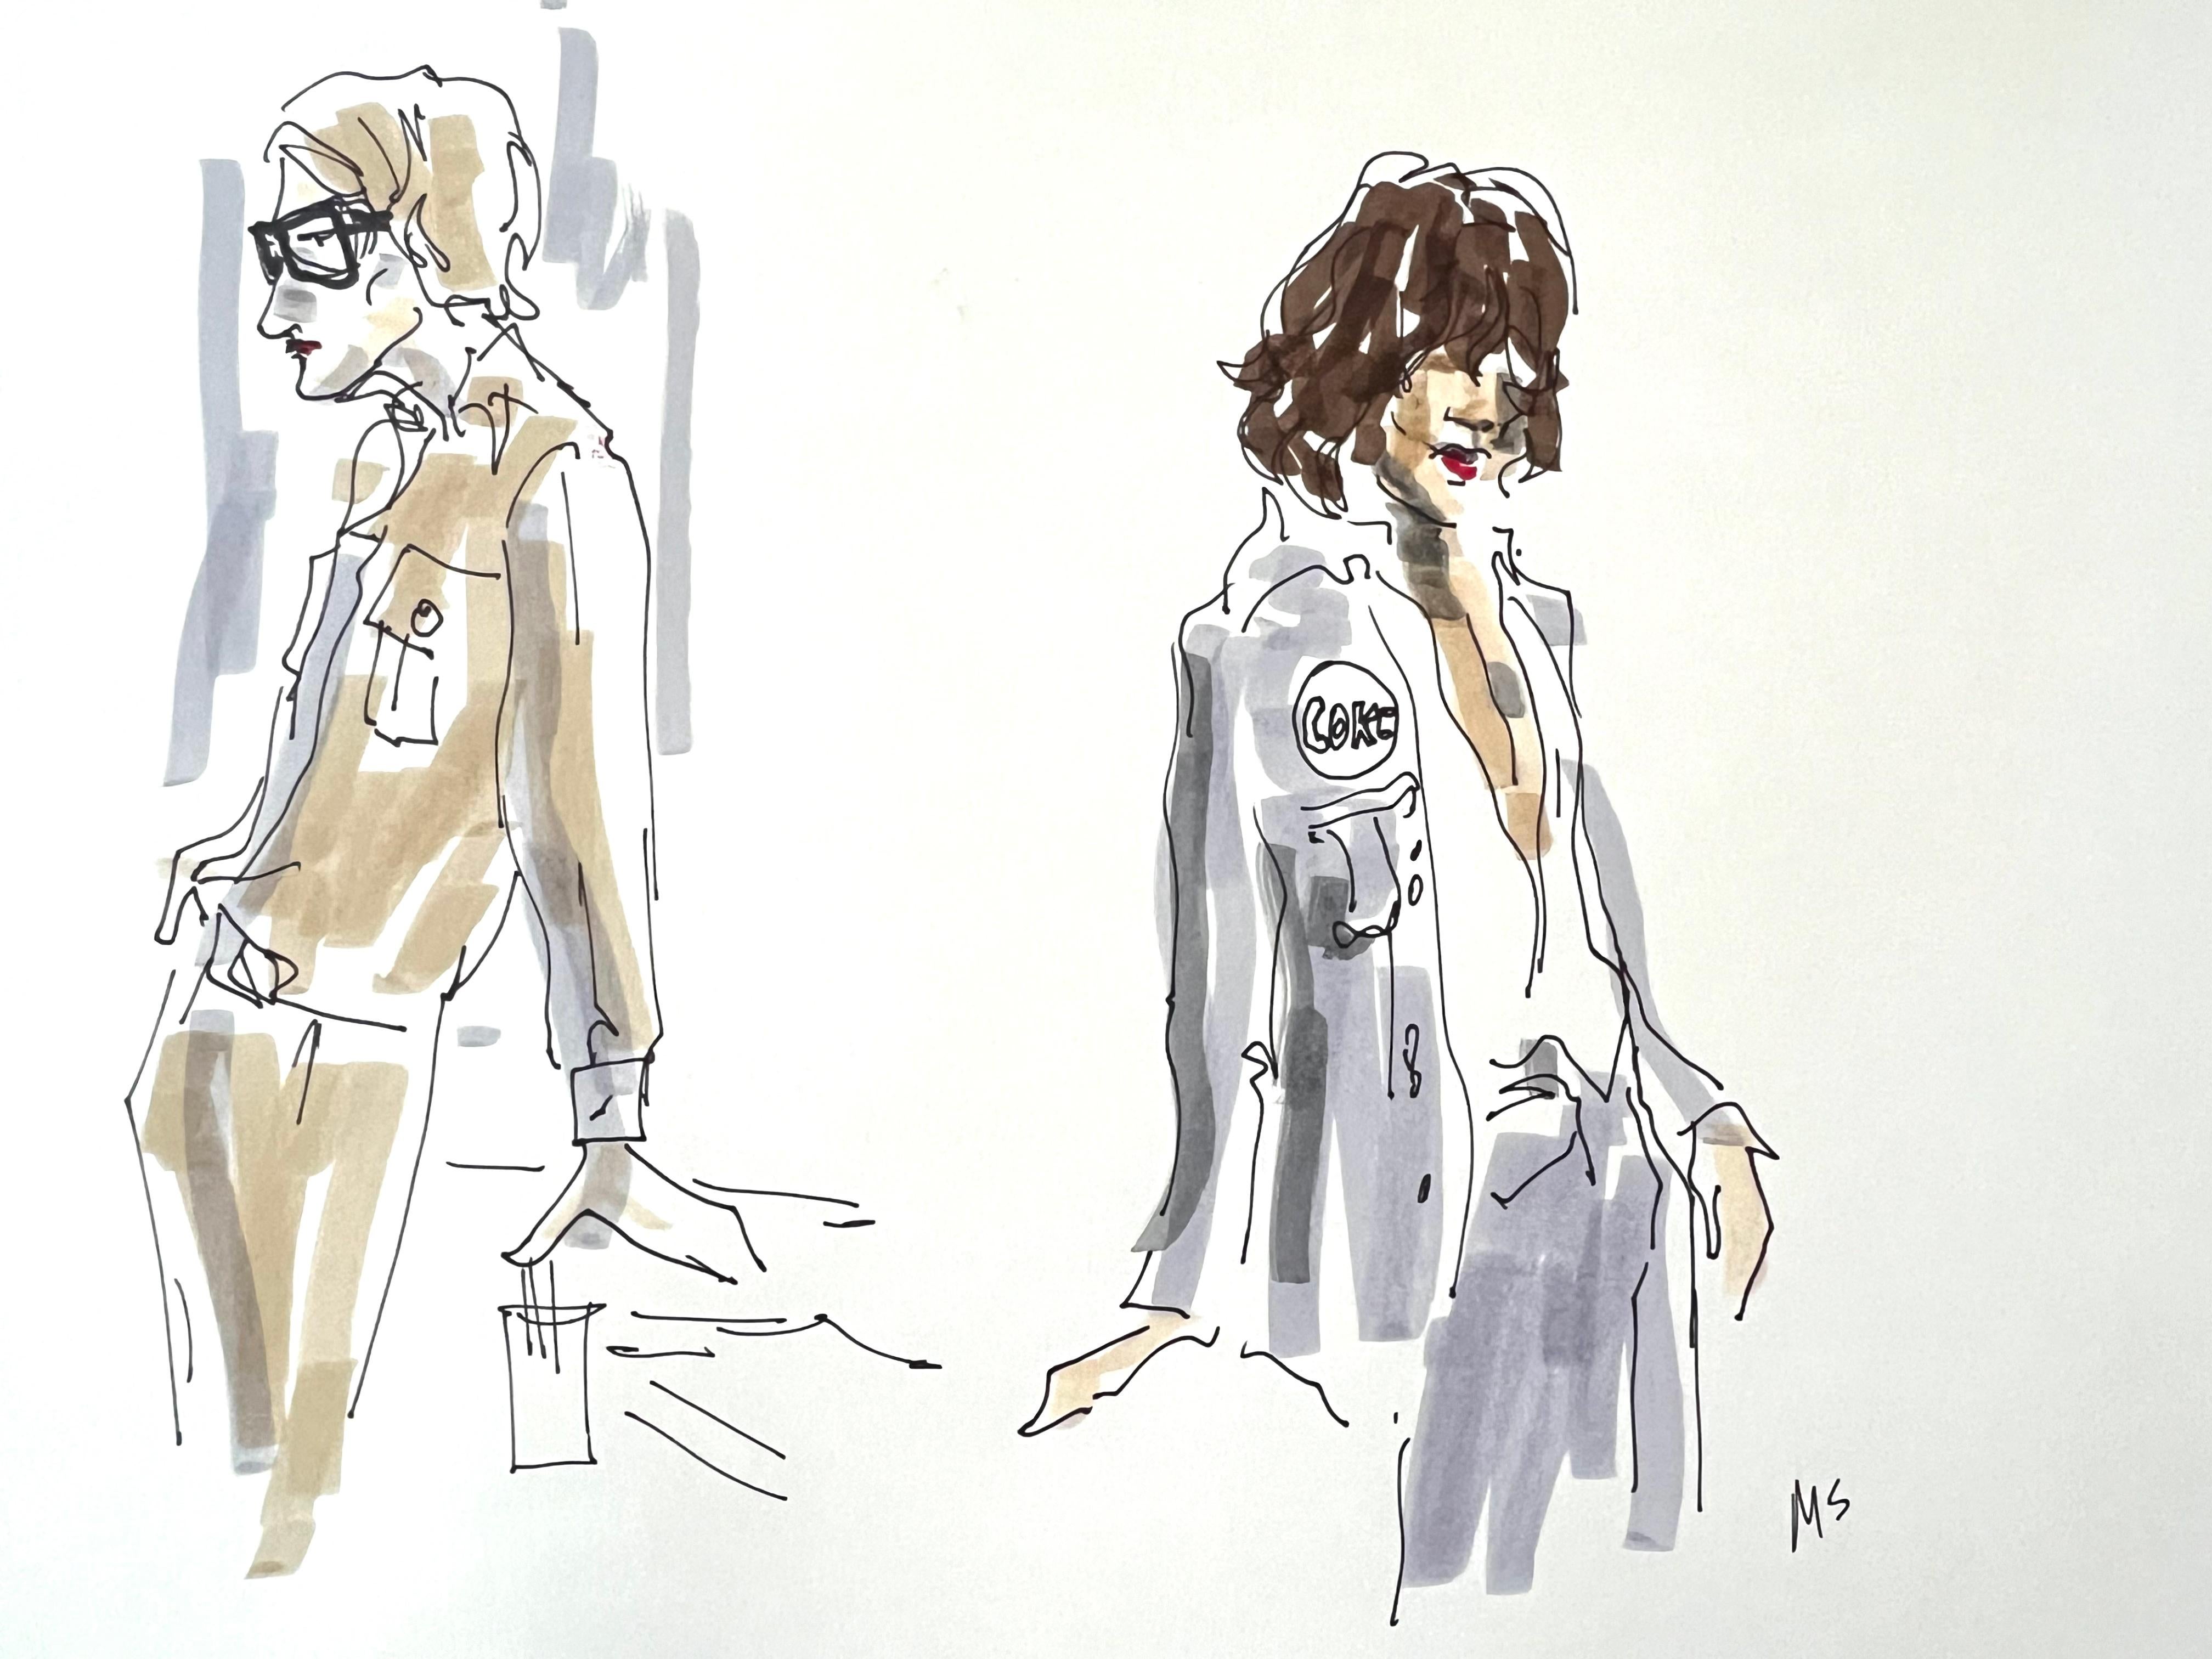 Figurative Art Manuel Santelices - Étude pour Yves Saint Laurent et Mick Jagger. De la série Mode